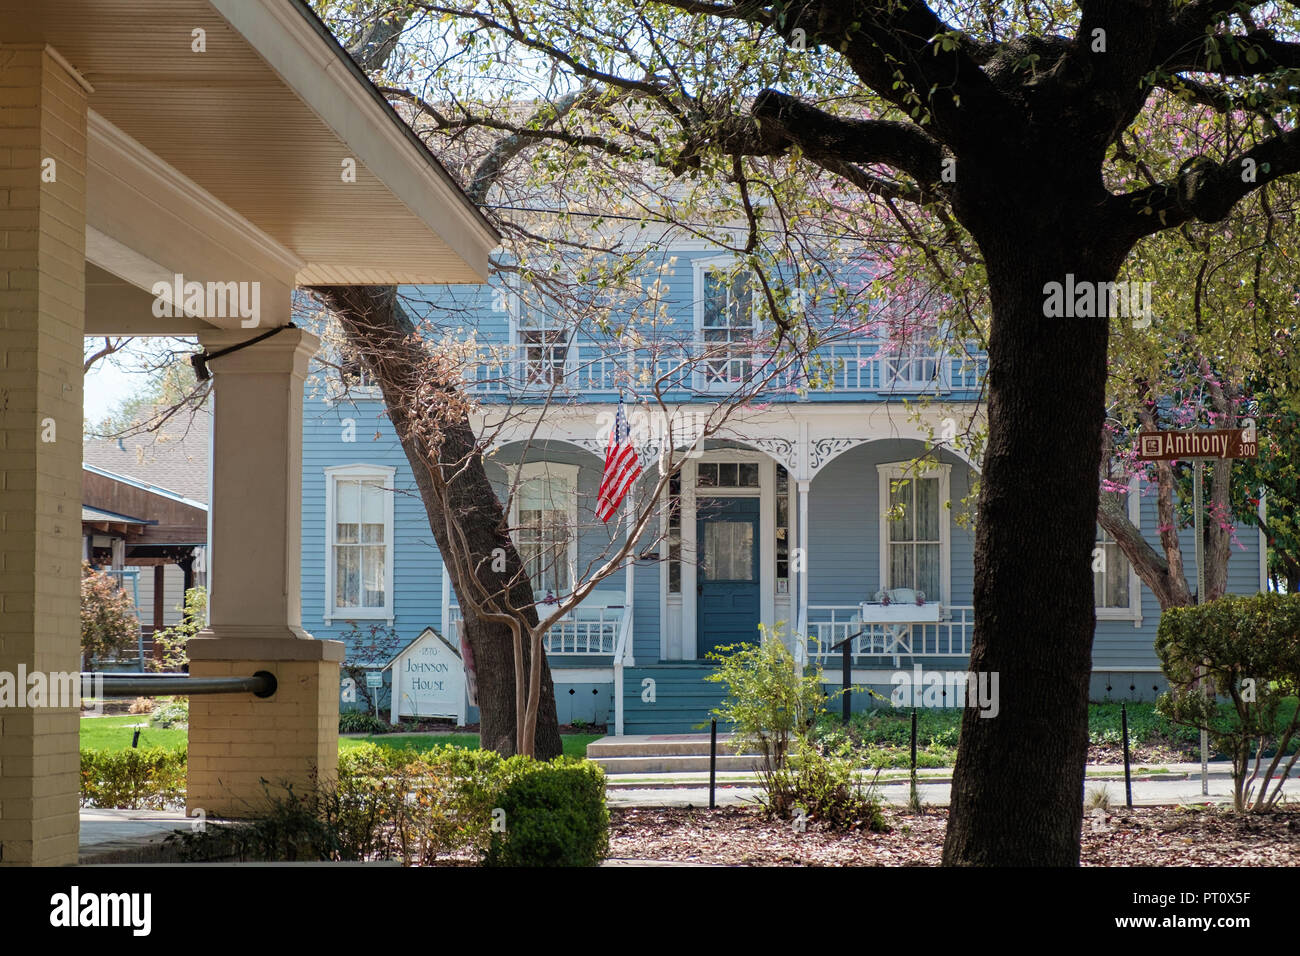 Zwei Geschichte blau geschuppt Haus mit weissen Fensterrahmen Italianate eave Halterungen & American Flag. Die Johnson House, Kastanie Square, McKinney Texas. Stockfoto